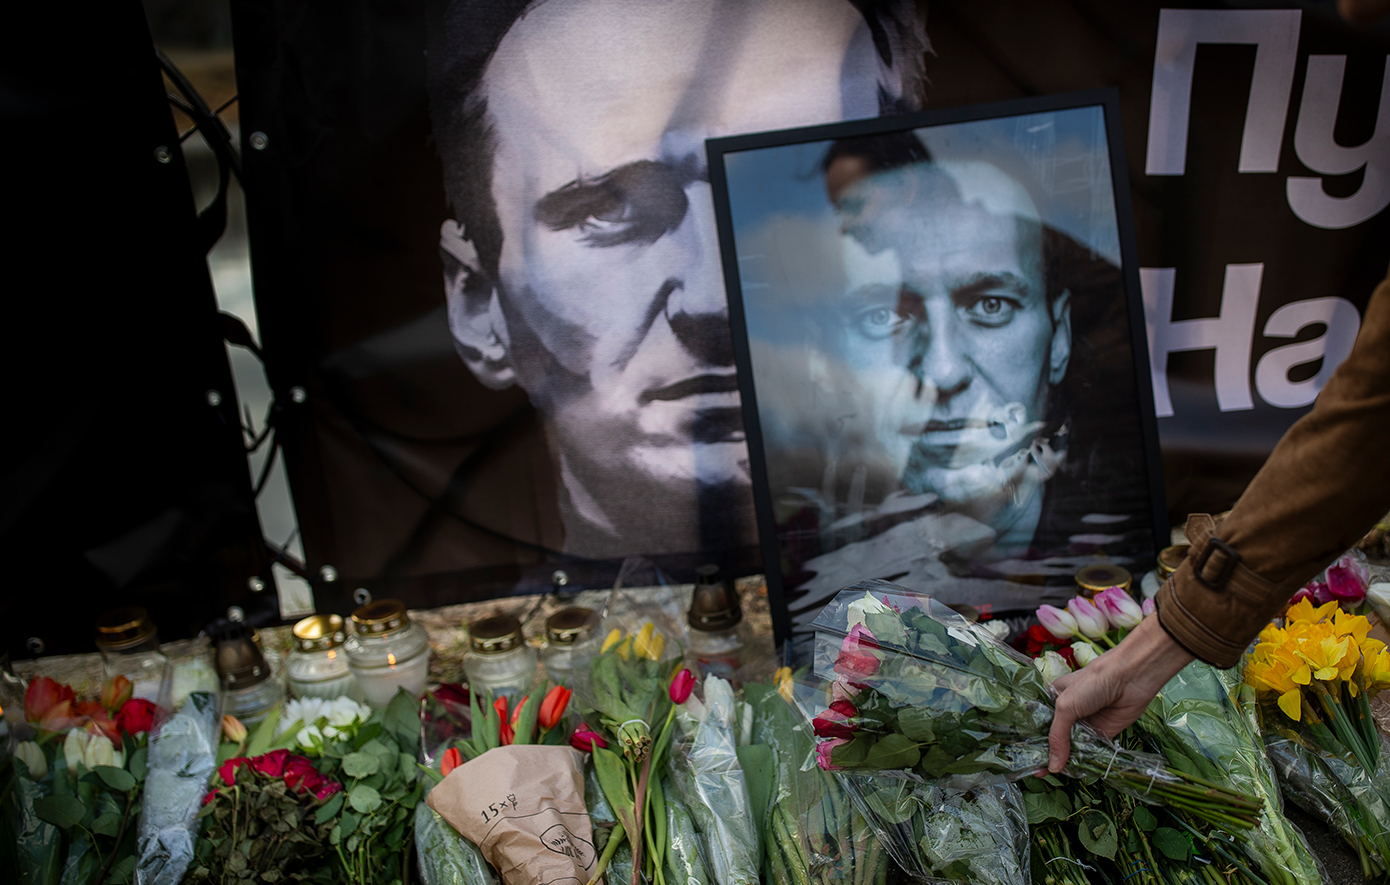 Σαράντα τρεις χώρες ζητούν τη διεξαγωγή μιας ανεξάρτητης διεθνούς έρευνας για τον θάνατο του Ναβάλνι